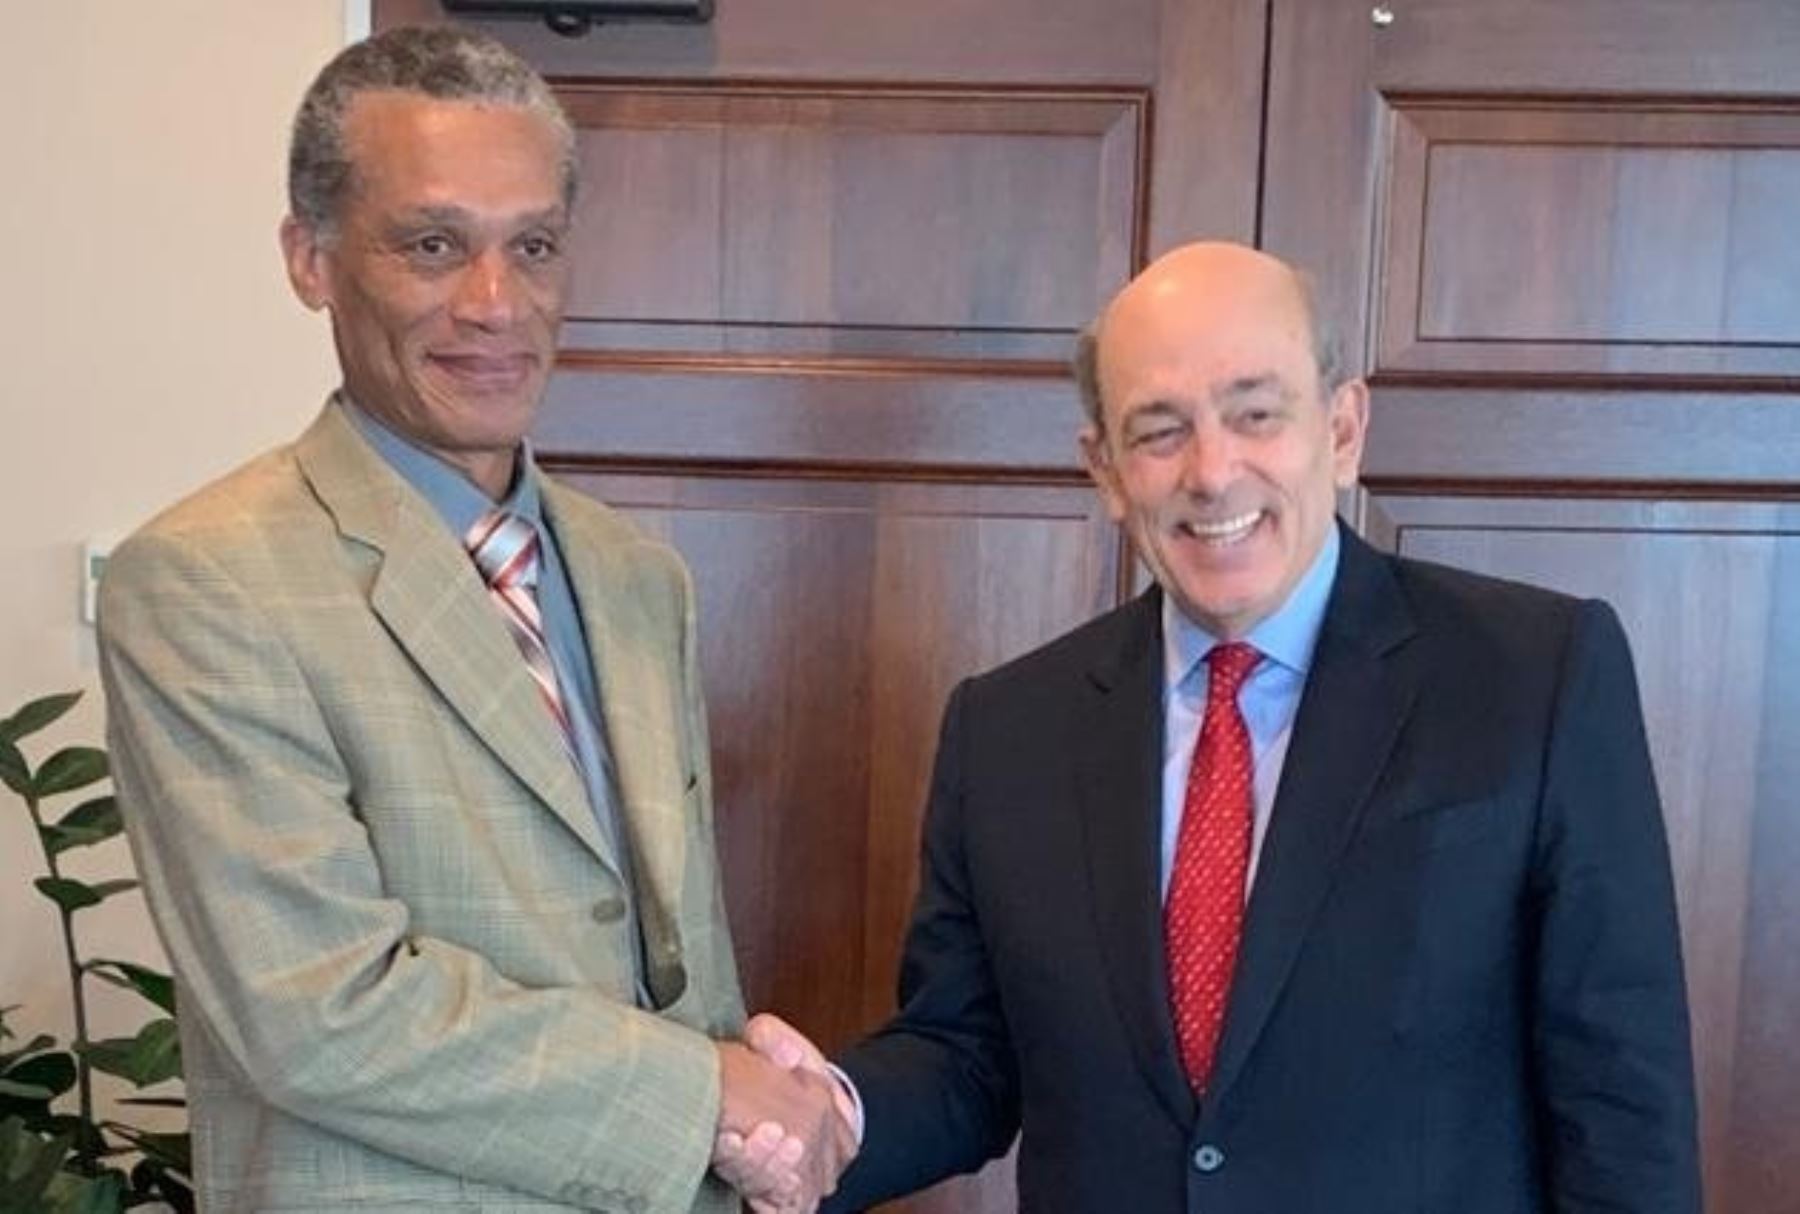 El candidato del Perú a la Secretaría General de la OEA, Emb. Hugo de Zela, se reunió en Trinidad y Tobago con el Canciller Dennis Moses. Foto: Twitter